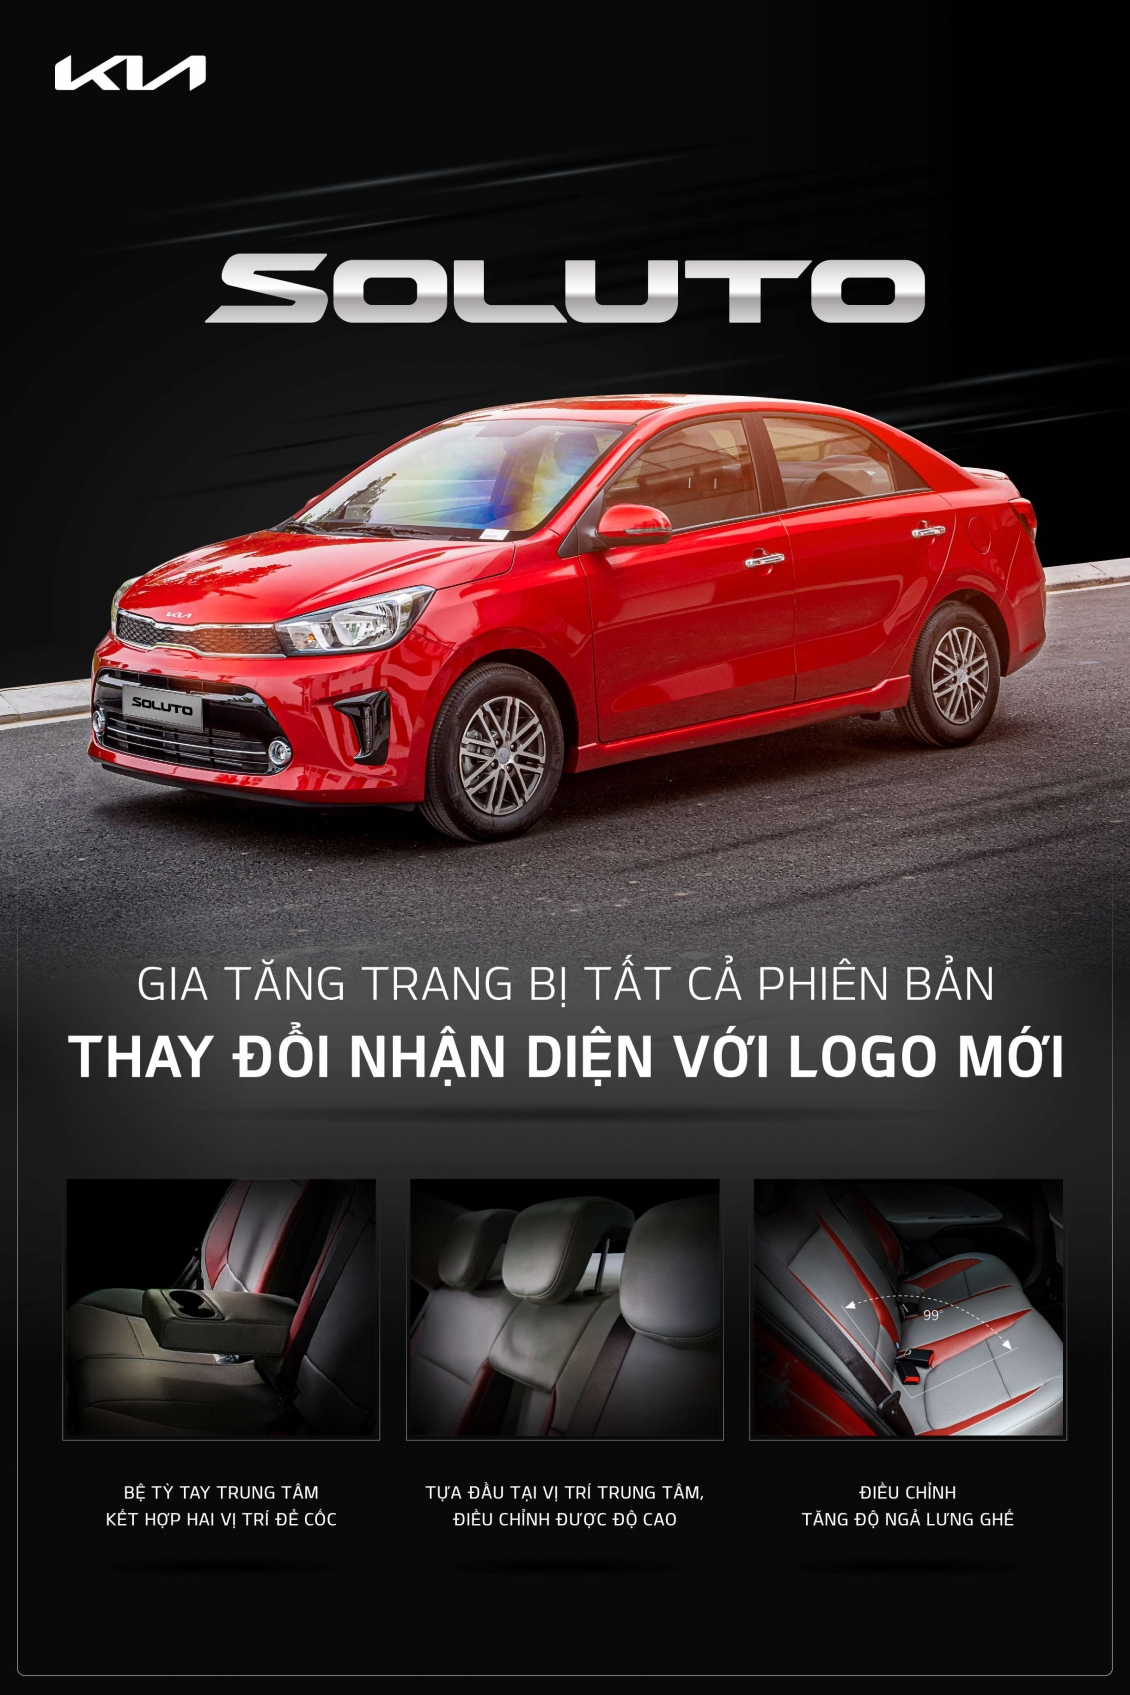 Kia Soluto thay logo mới, thêm trang bị trên tất cả các phiên bản